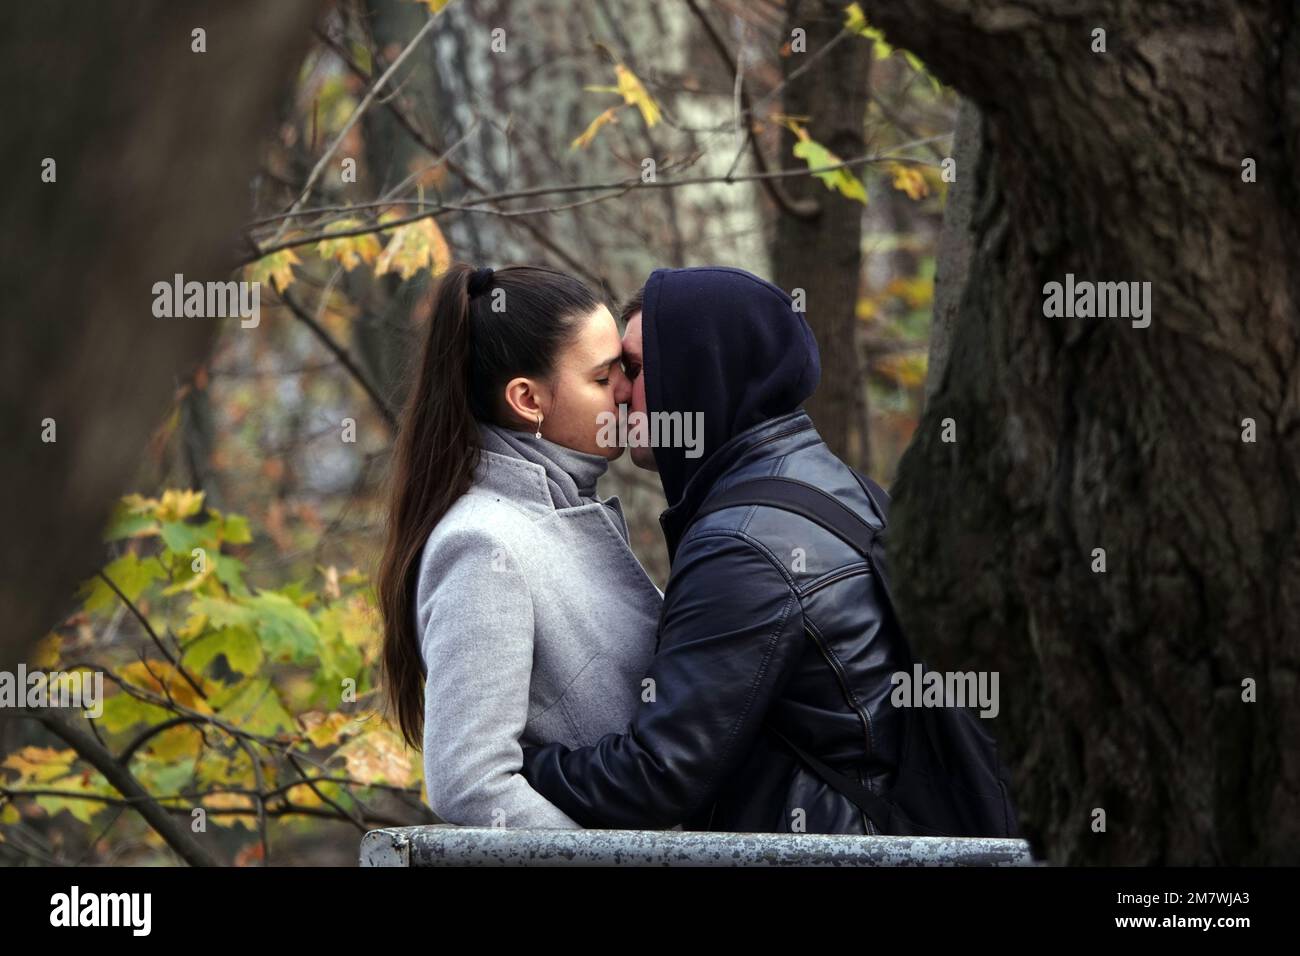 Kiev, Ukraine 1 novembre 2019: Une jeune fille et un gars baiser dans un parc - c'est L'AMOUR Banque D'Images